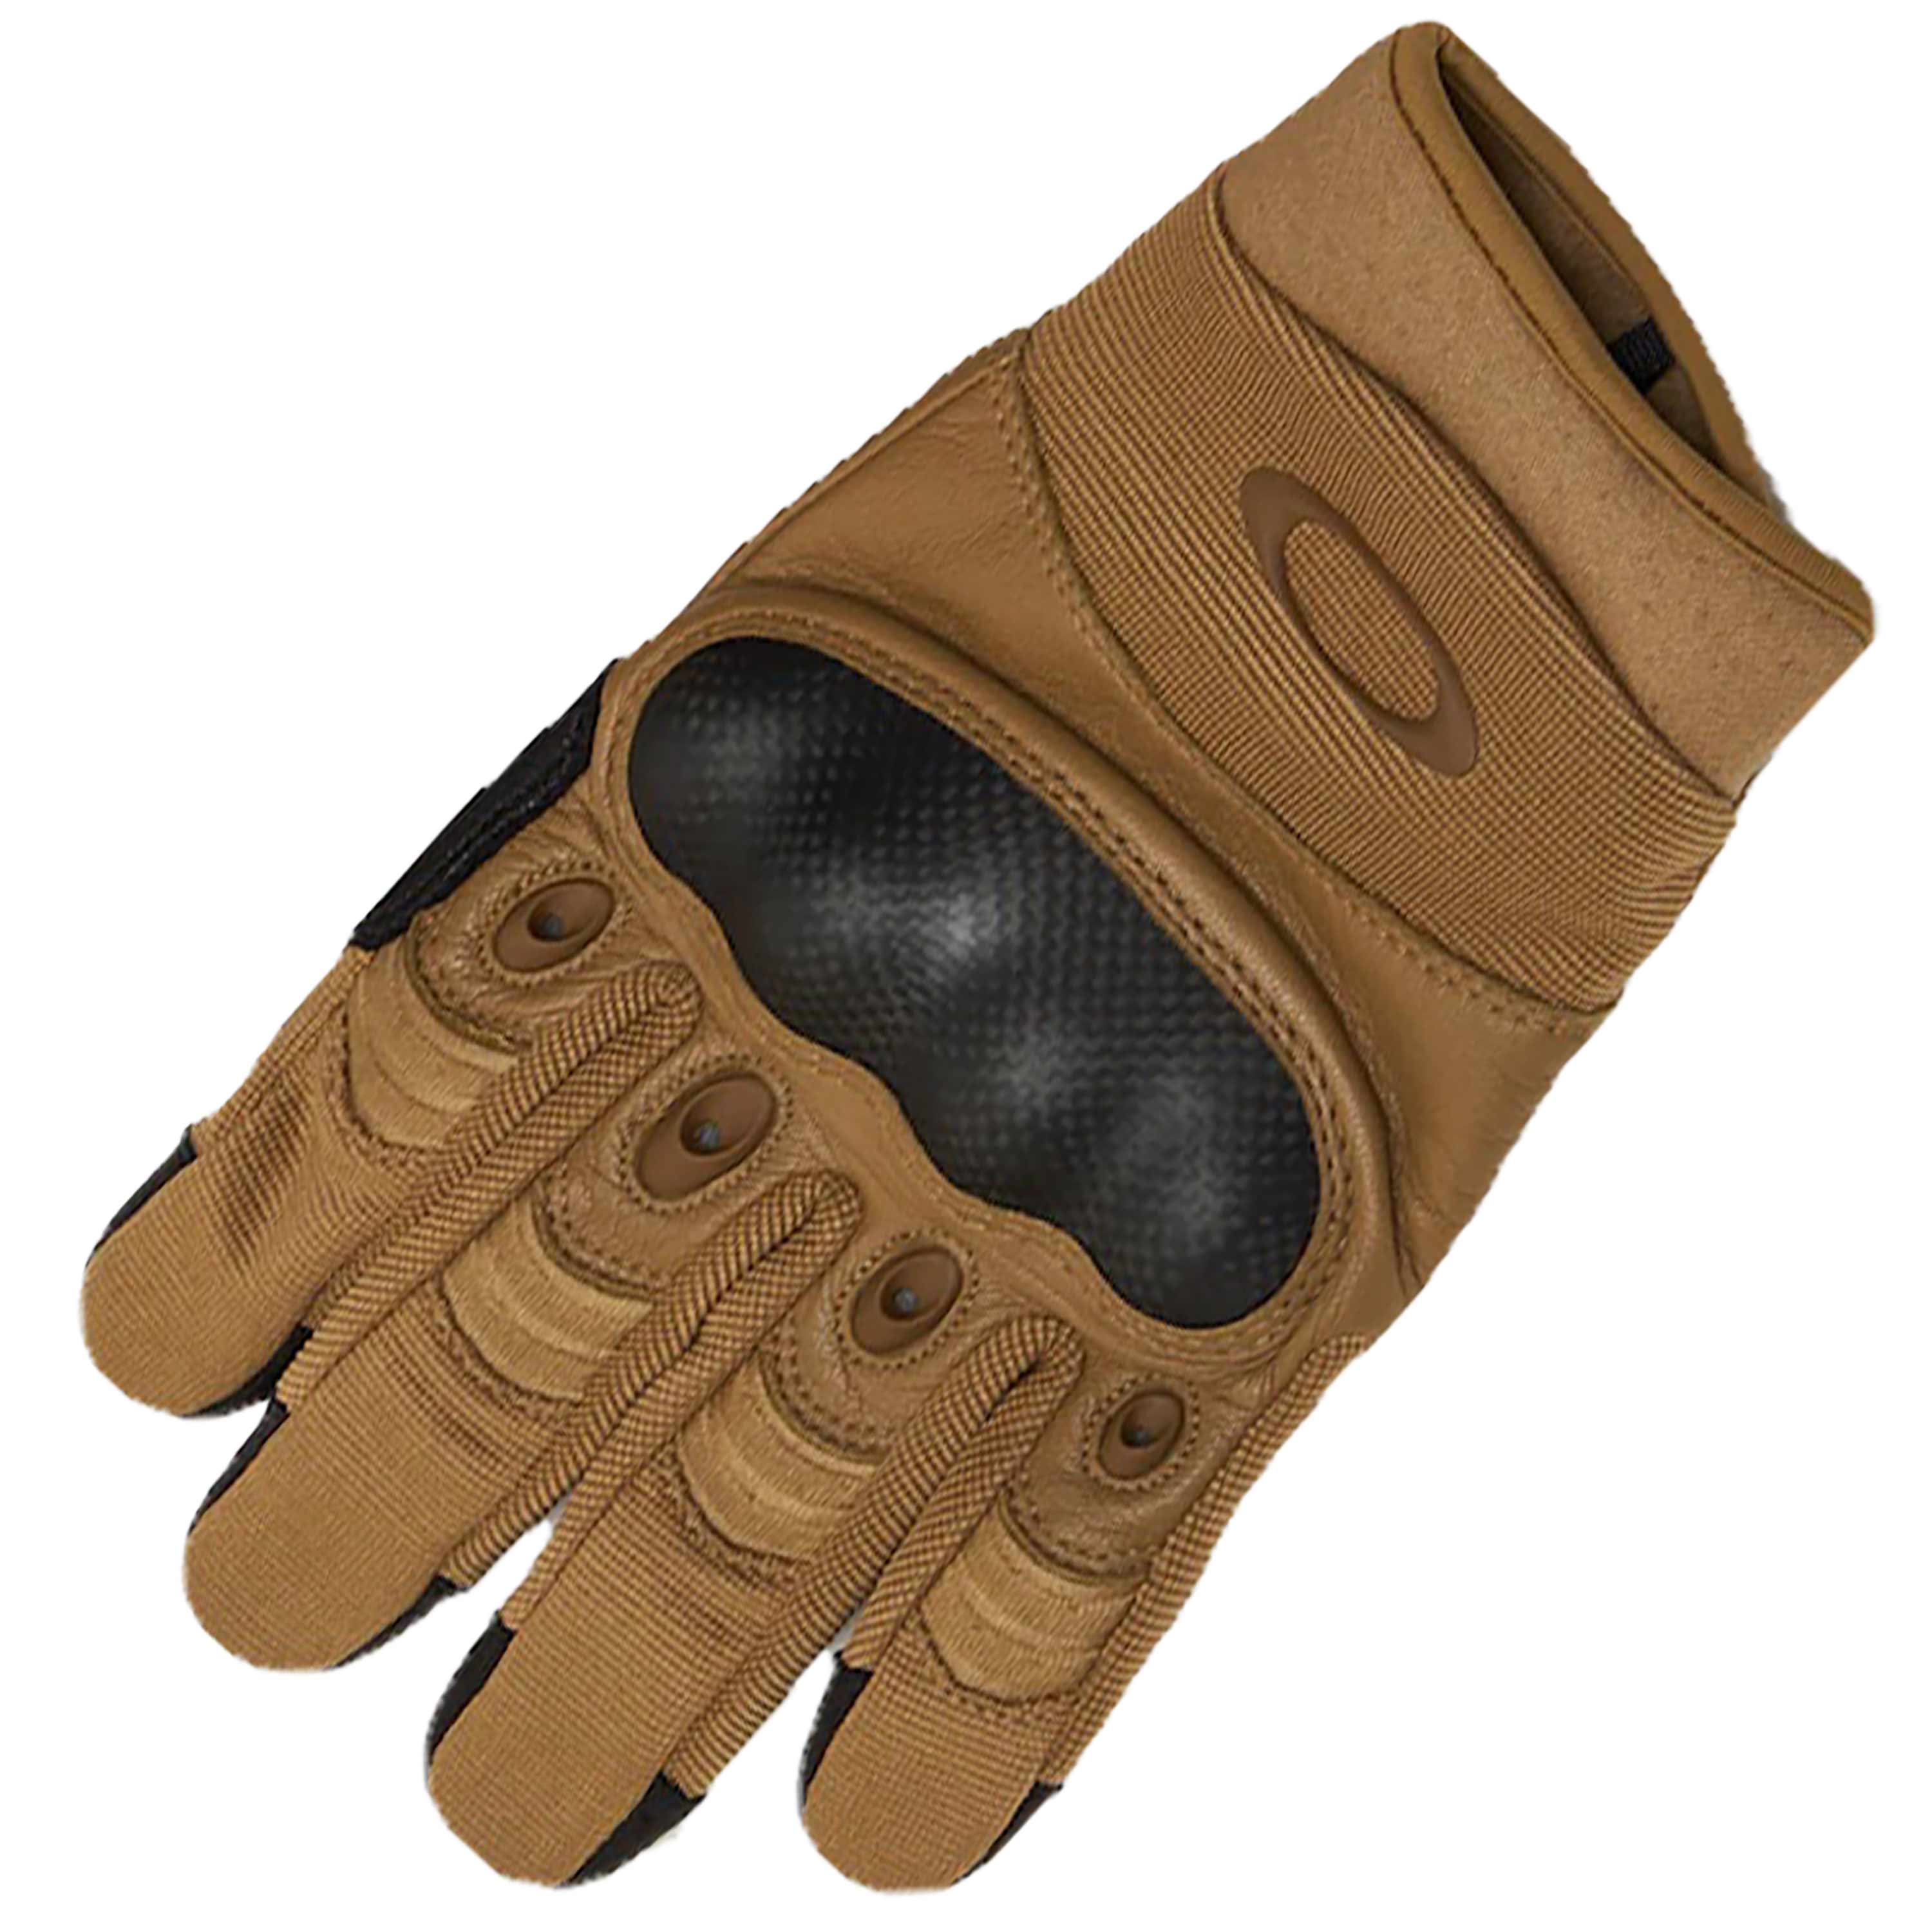 oakley gloves